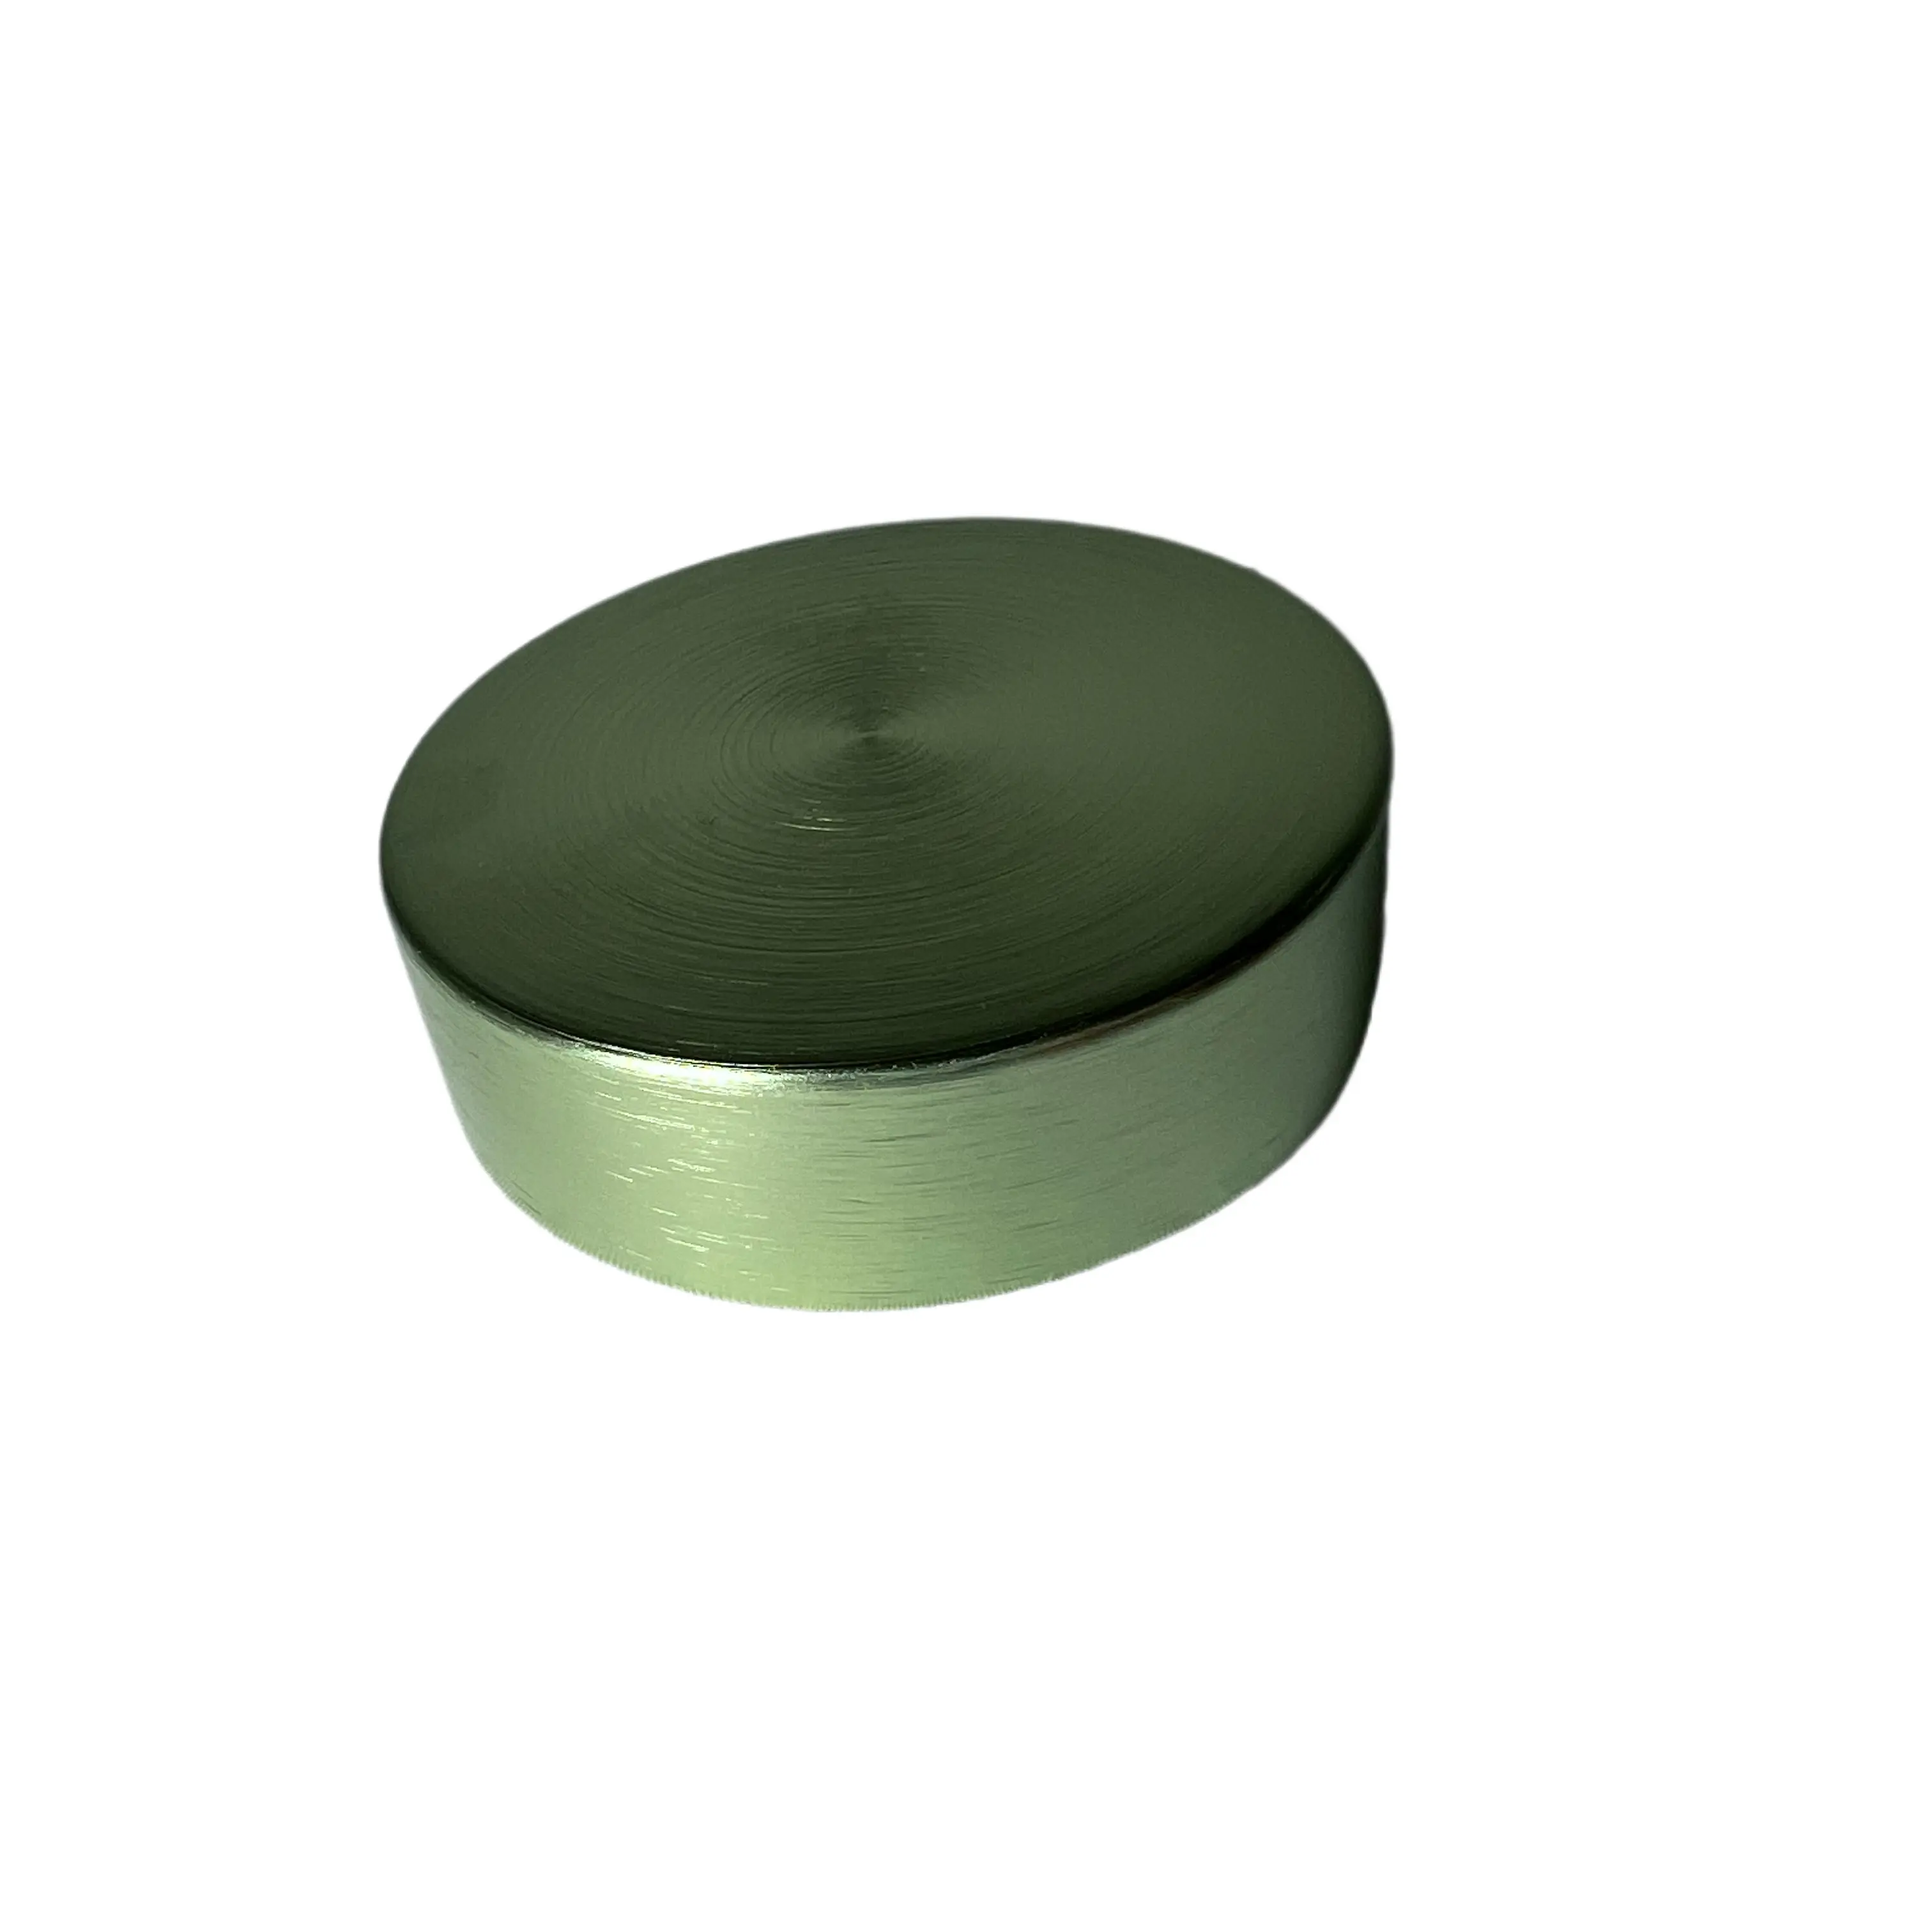 58-400 bouchons crème vert brossé couvercle en métal vert brossé avec doublures bouchons à vis en aluminium pour pot